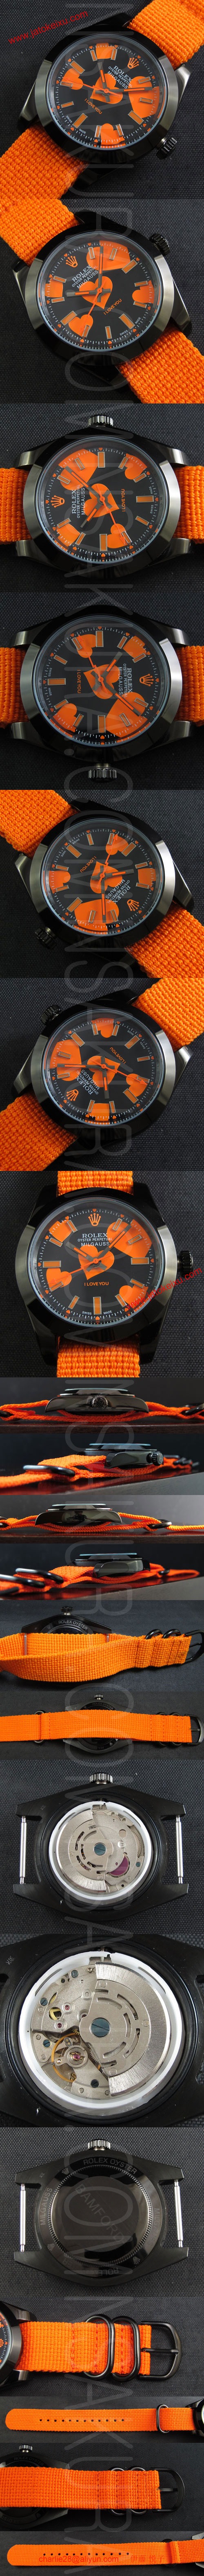 ロレックス 2015JOFSE48GJ スーパーコピー時計